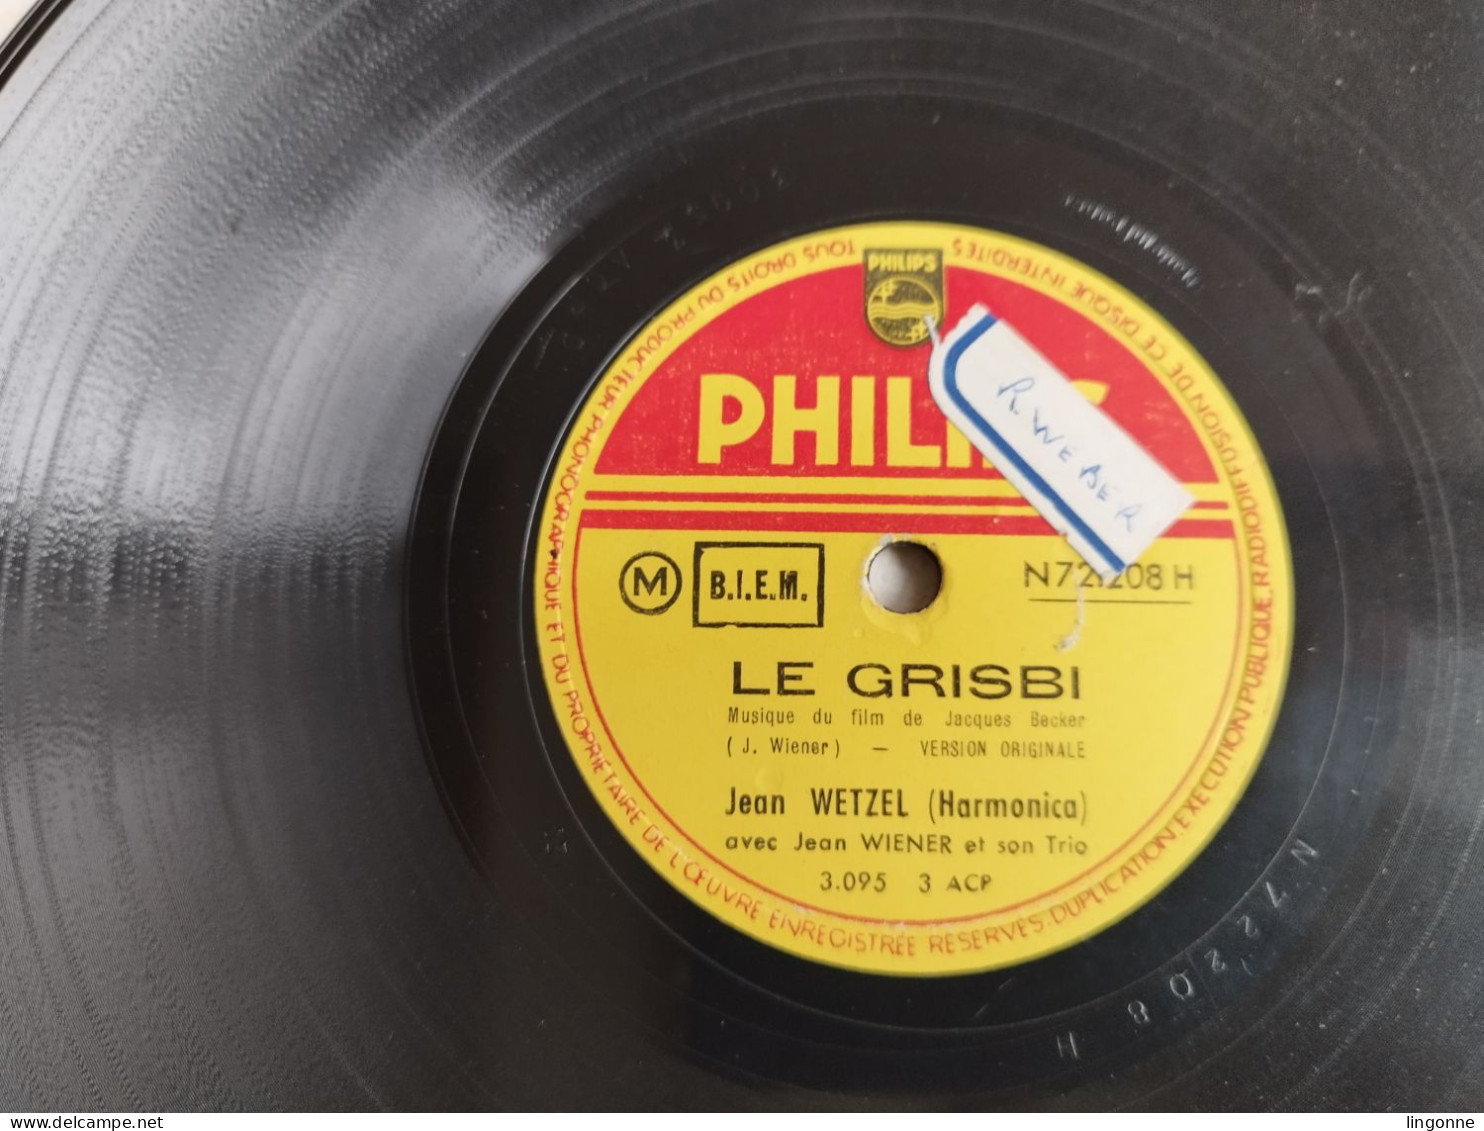 78 TOURS 250 Mm Jean Wetzel – Grisbi Blues / Le Grisbi 	Philips – N 72.208 H - Speciale Formaten